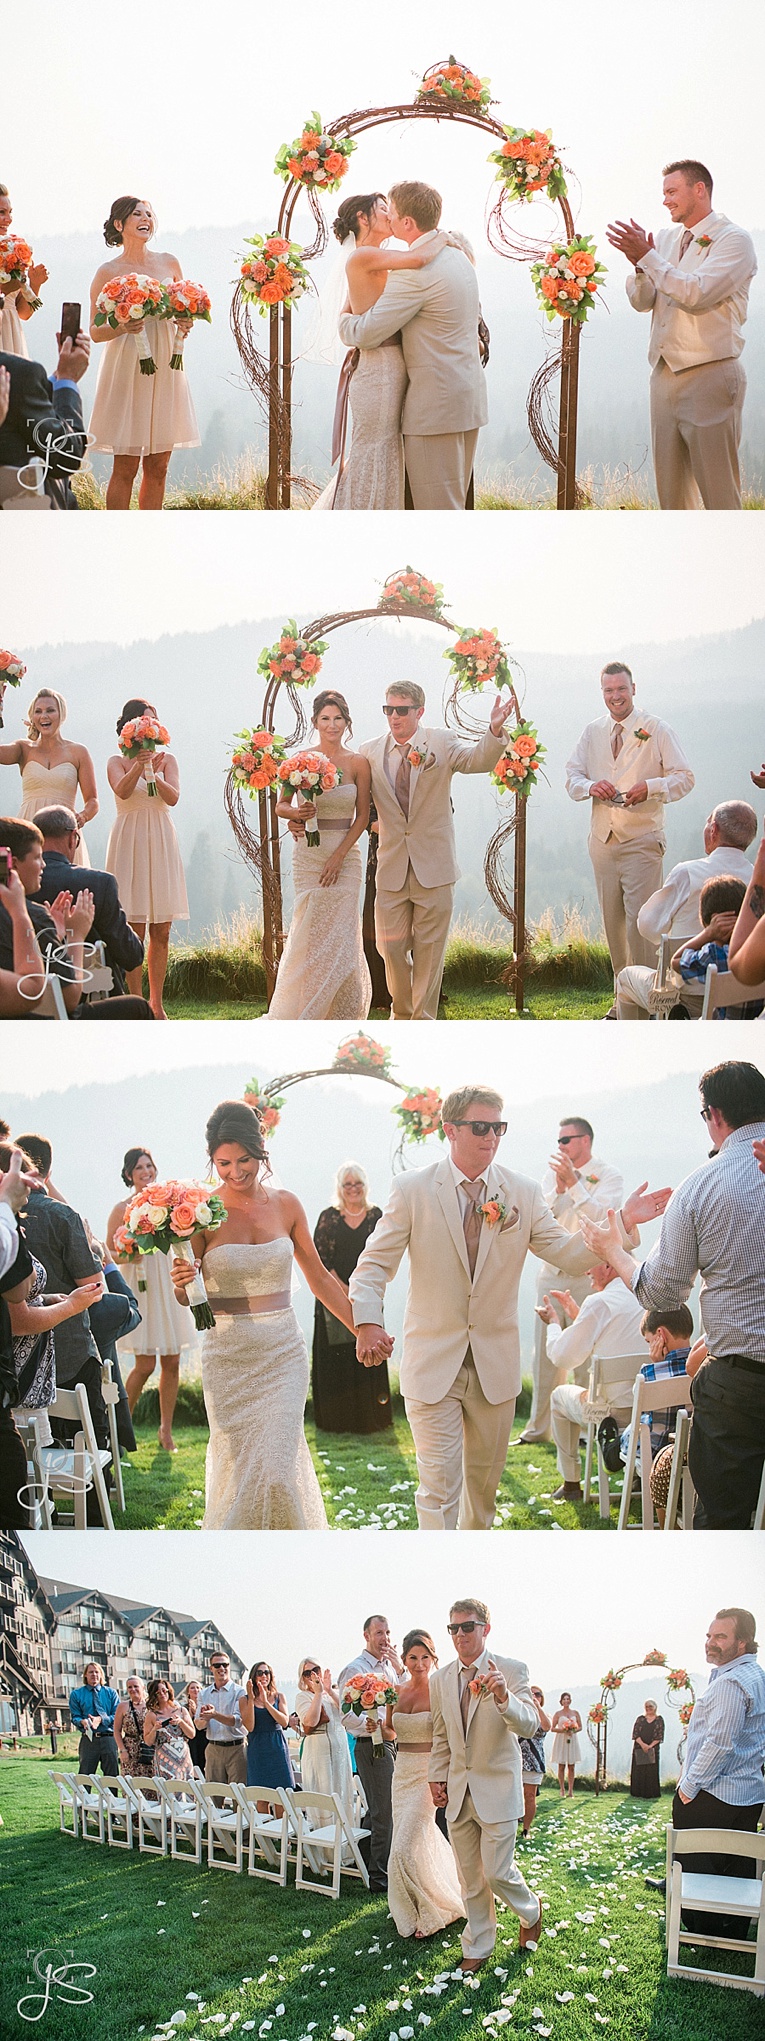 Suncadia Resort Wedding photos by Jenny Storment Photography a Tacoma wedding photographer -43